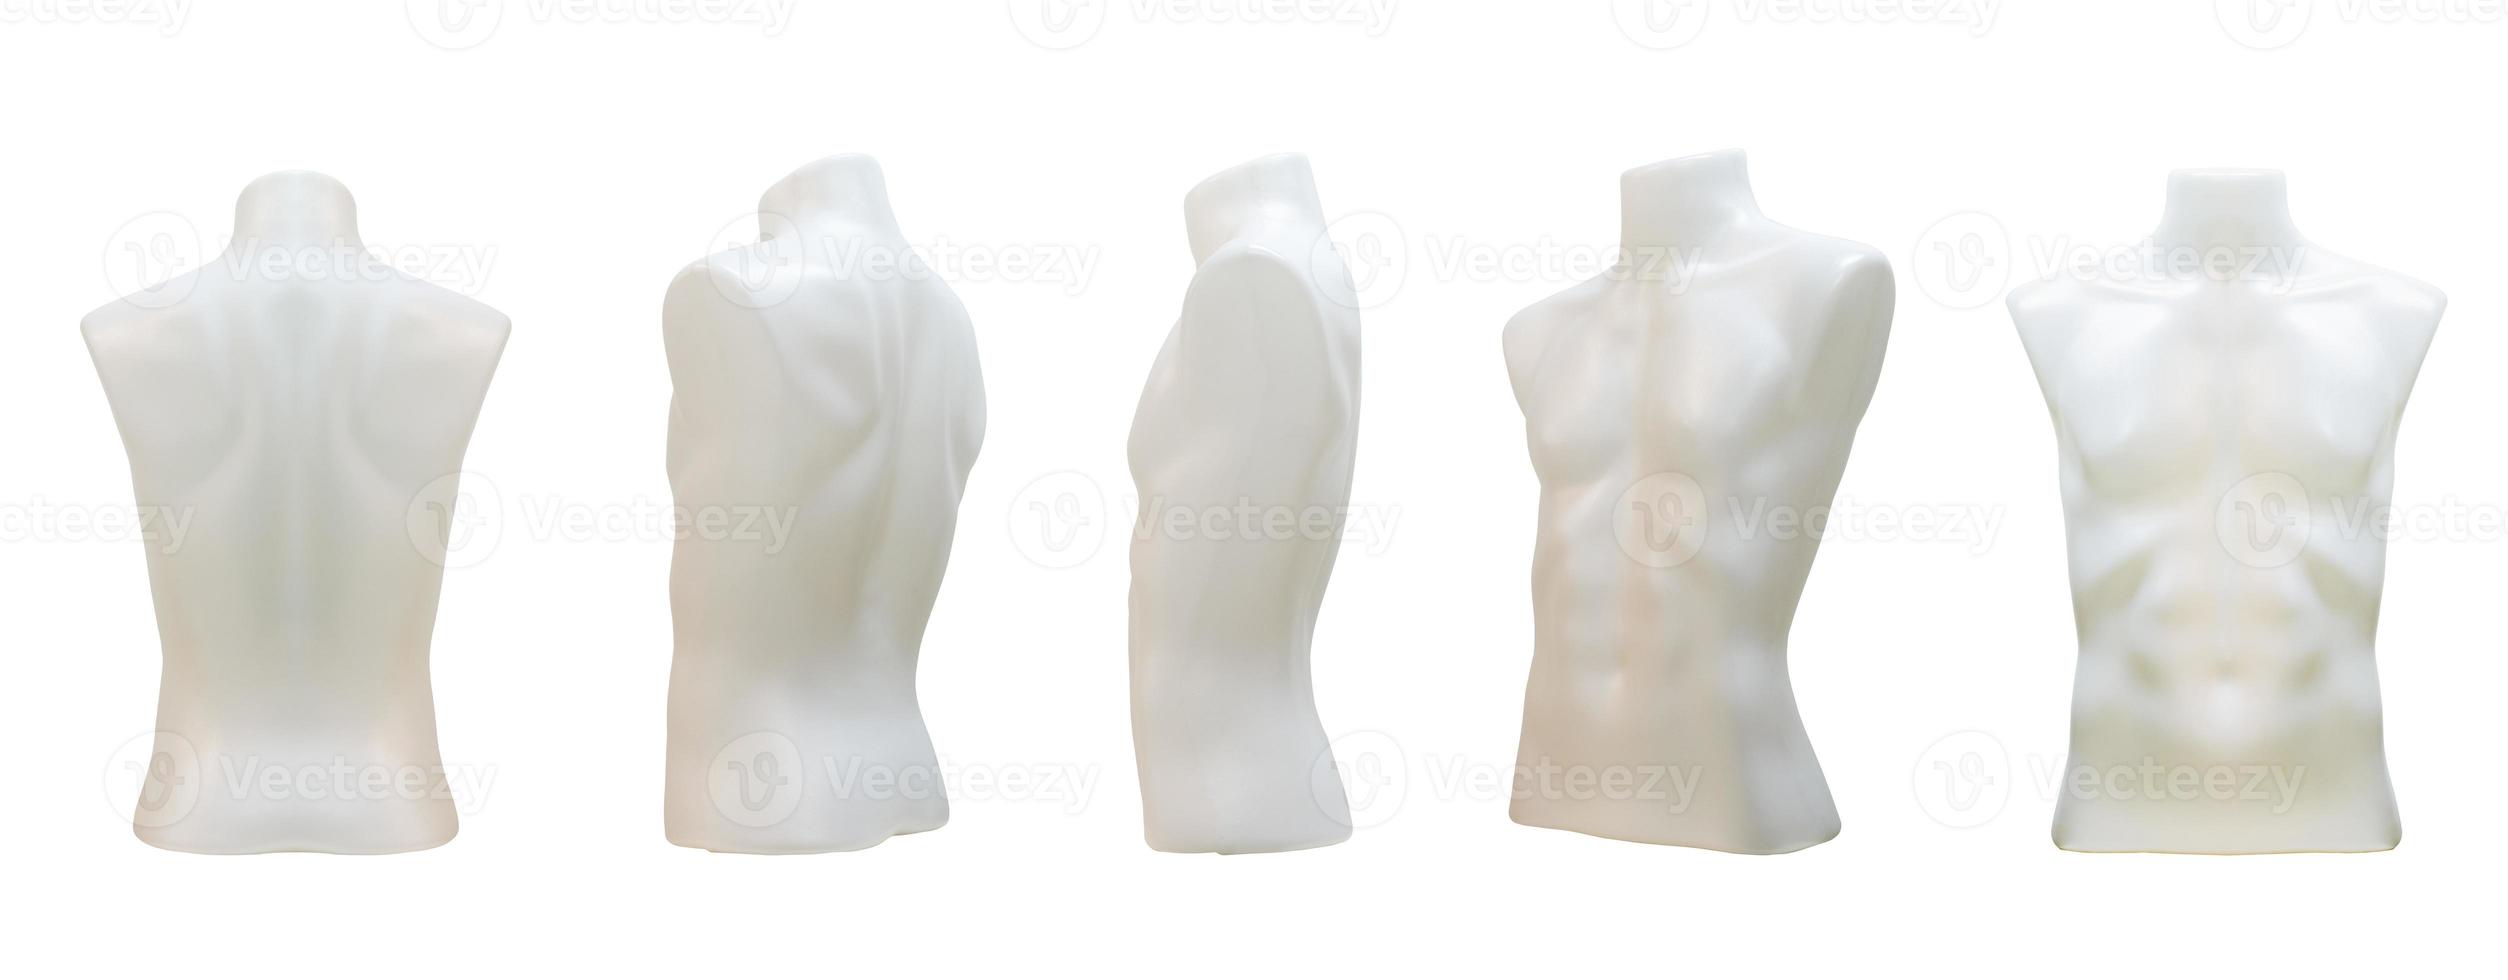 Maniquí masculino de plástico en la parte superior del cuerpo sin ropa aislado sobre fondo blanco con trazado de recorte foto